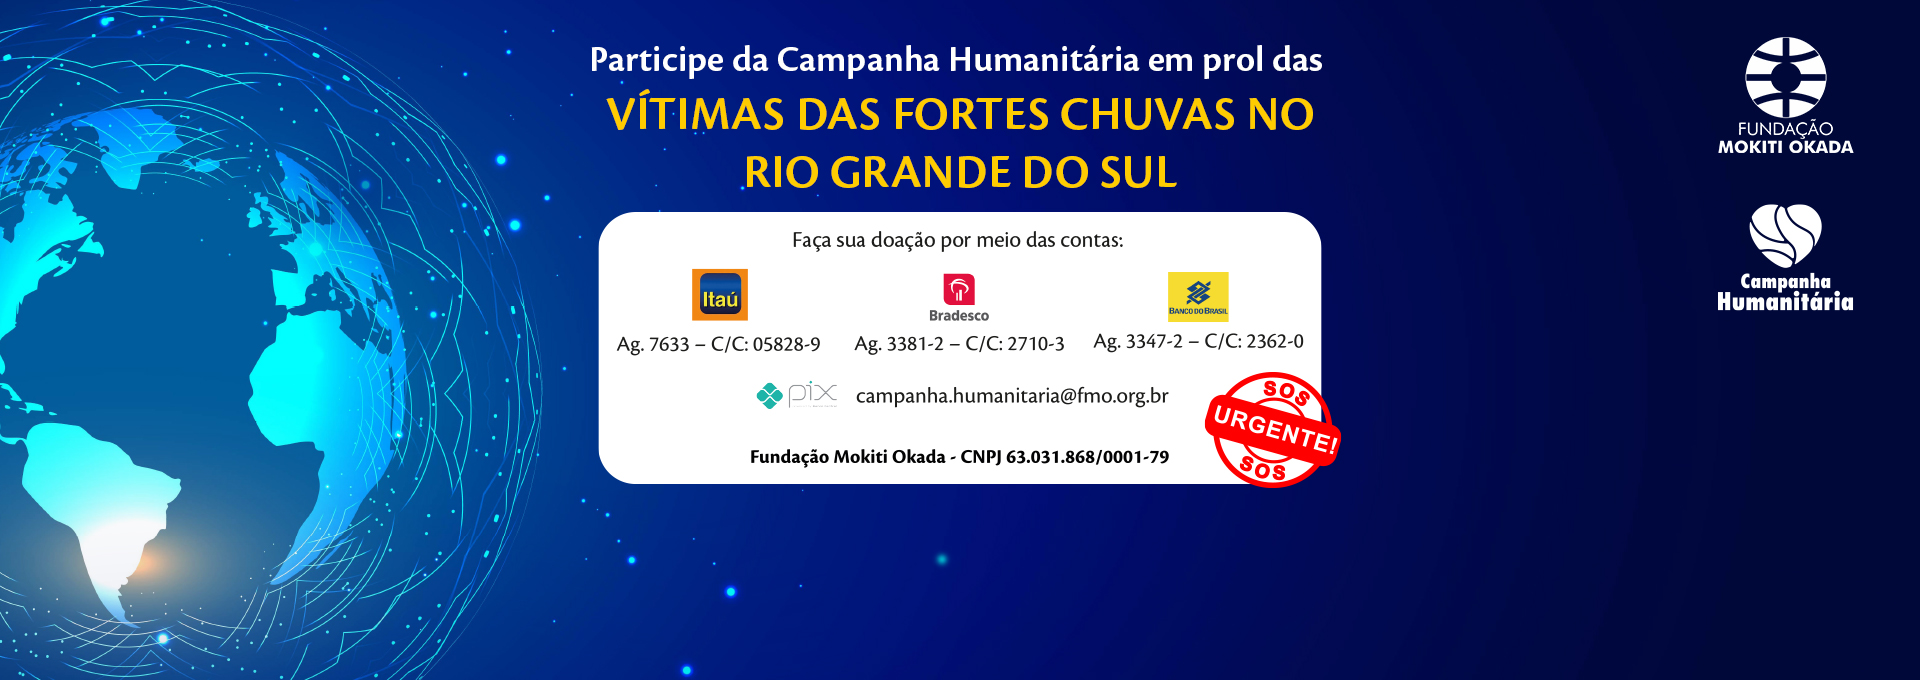 Campanha Humanitária Rio Grande do Sul